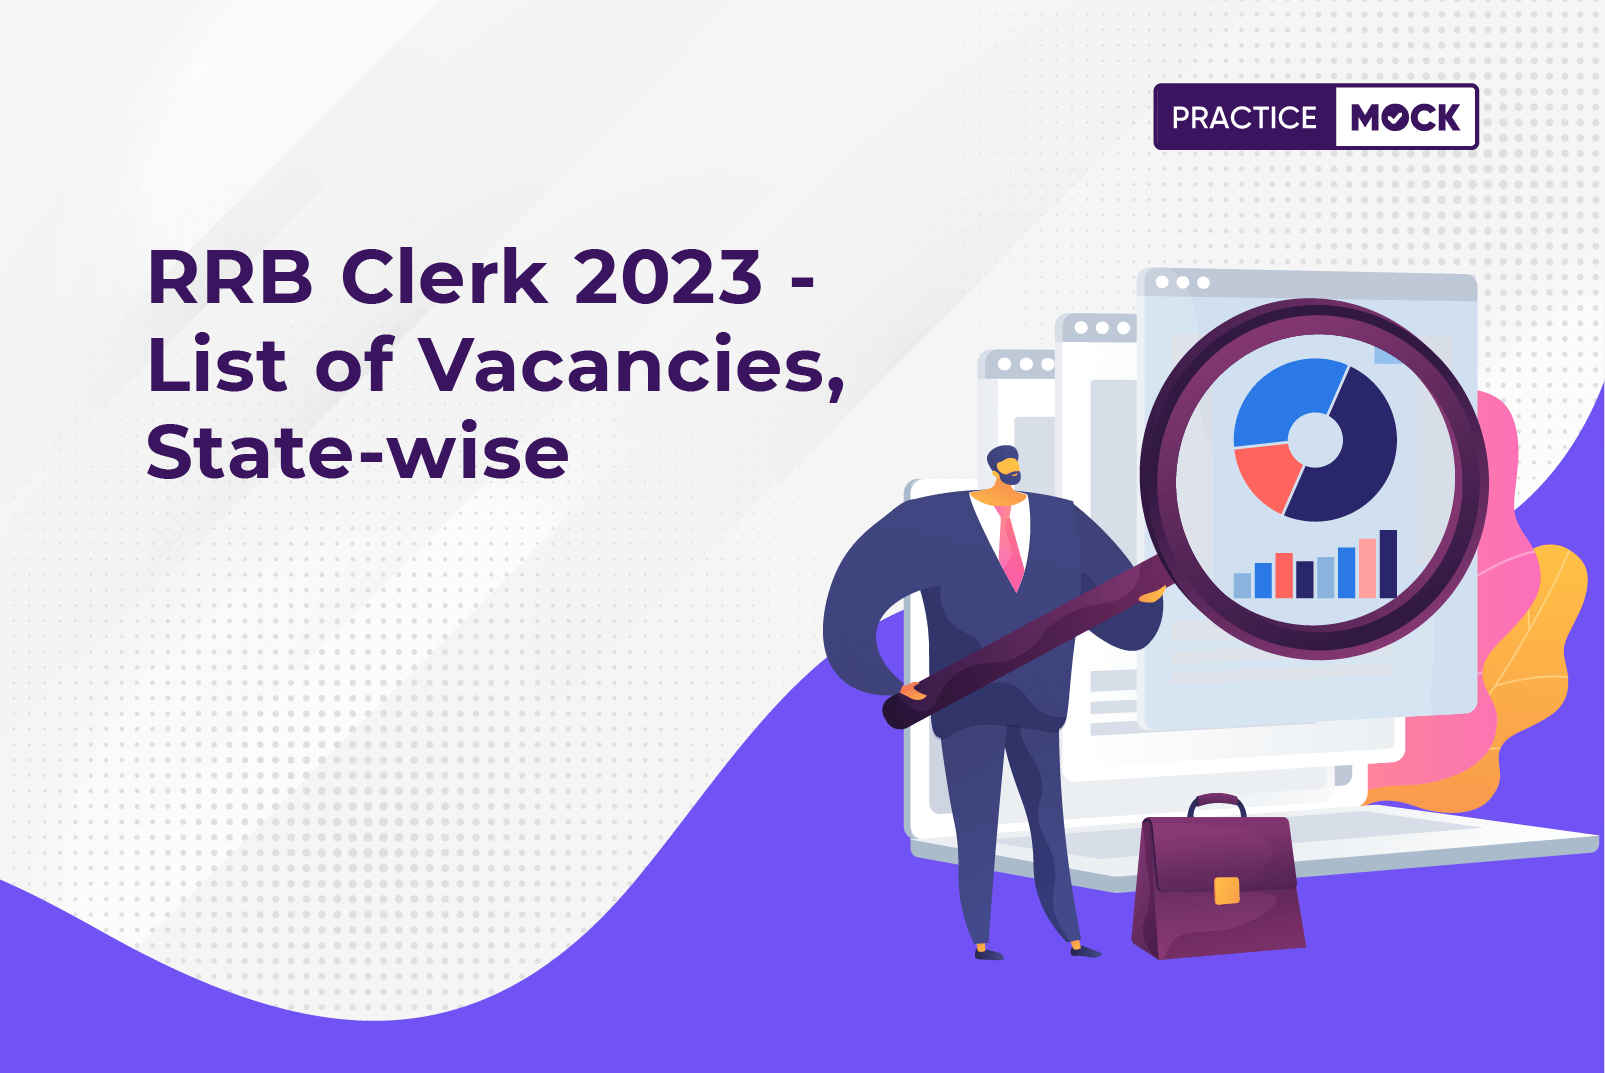 RRB Clerk 2023 - List of Vacancies, State-wise